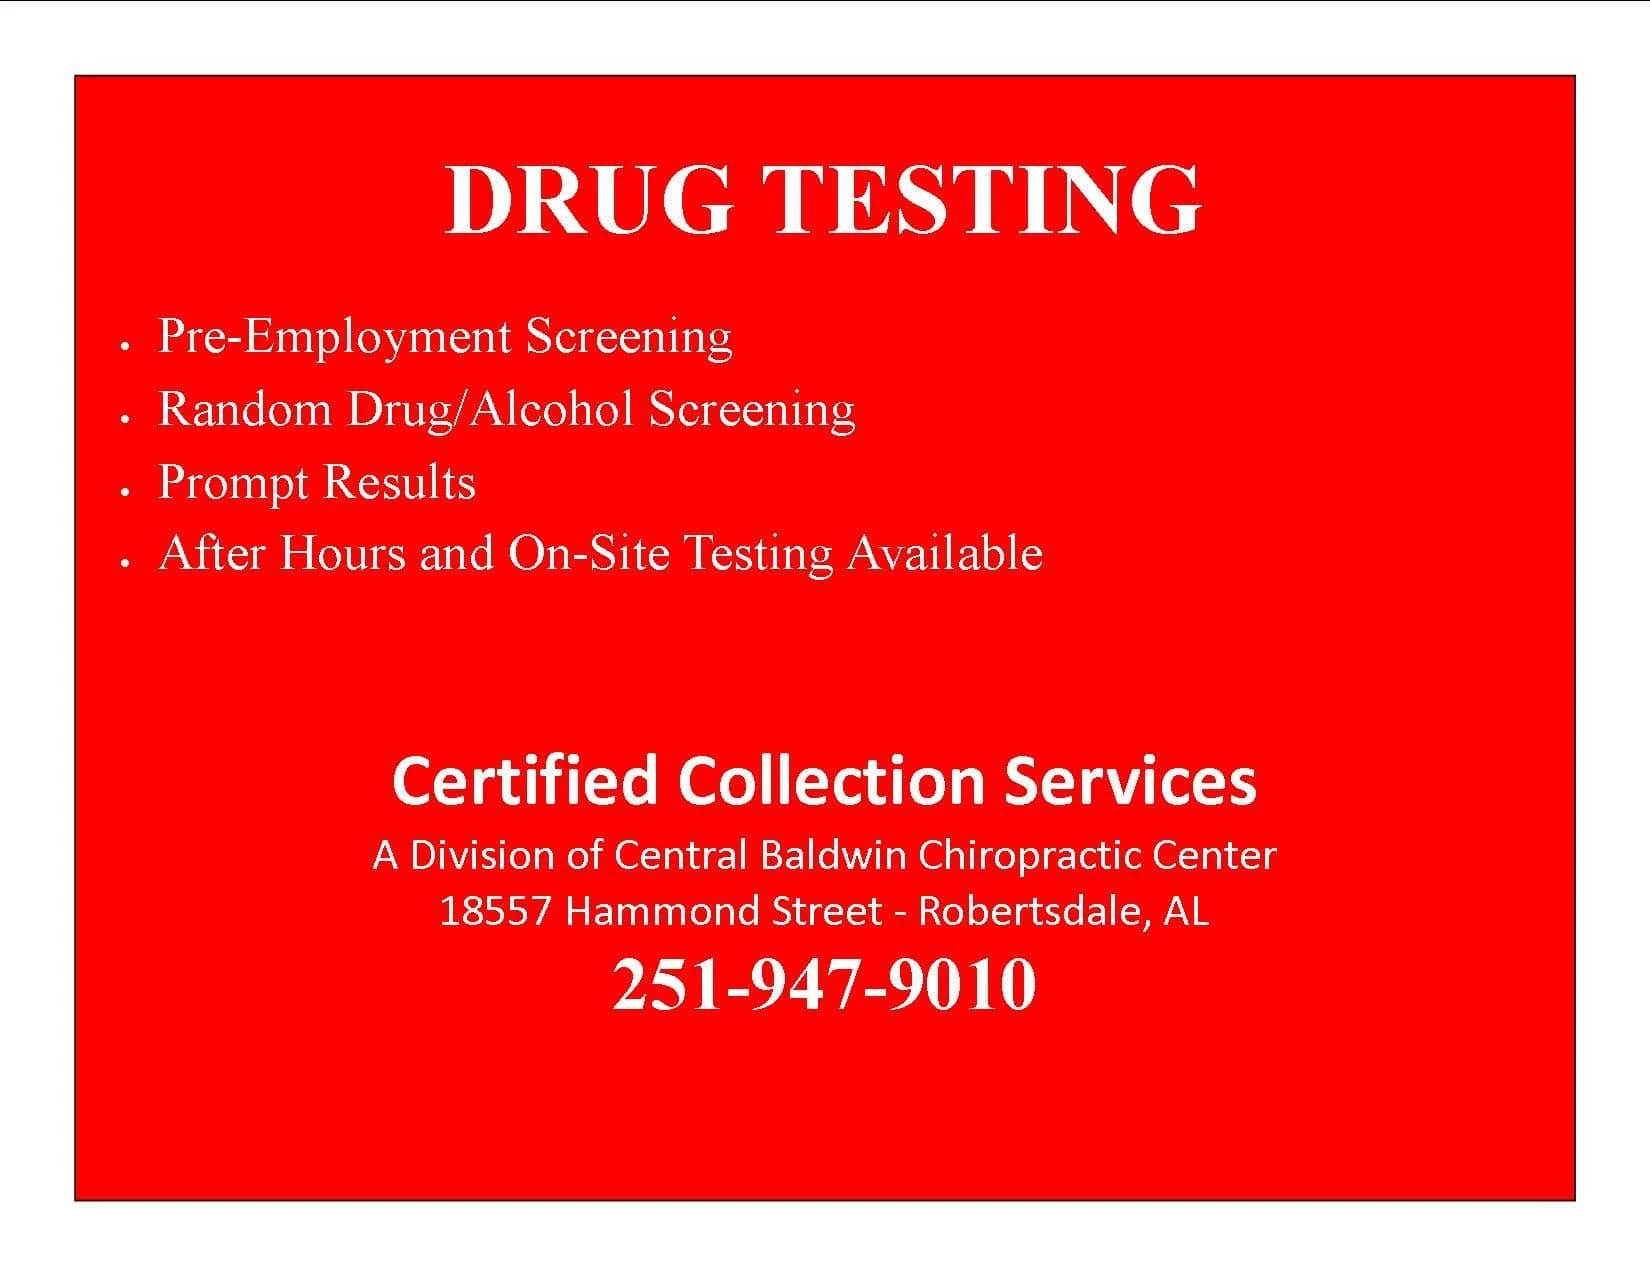 Slideshow-like image of drug testing bullet points